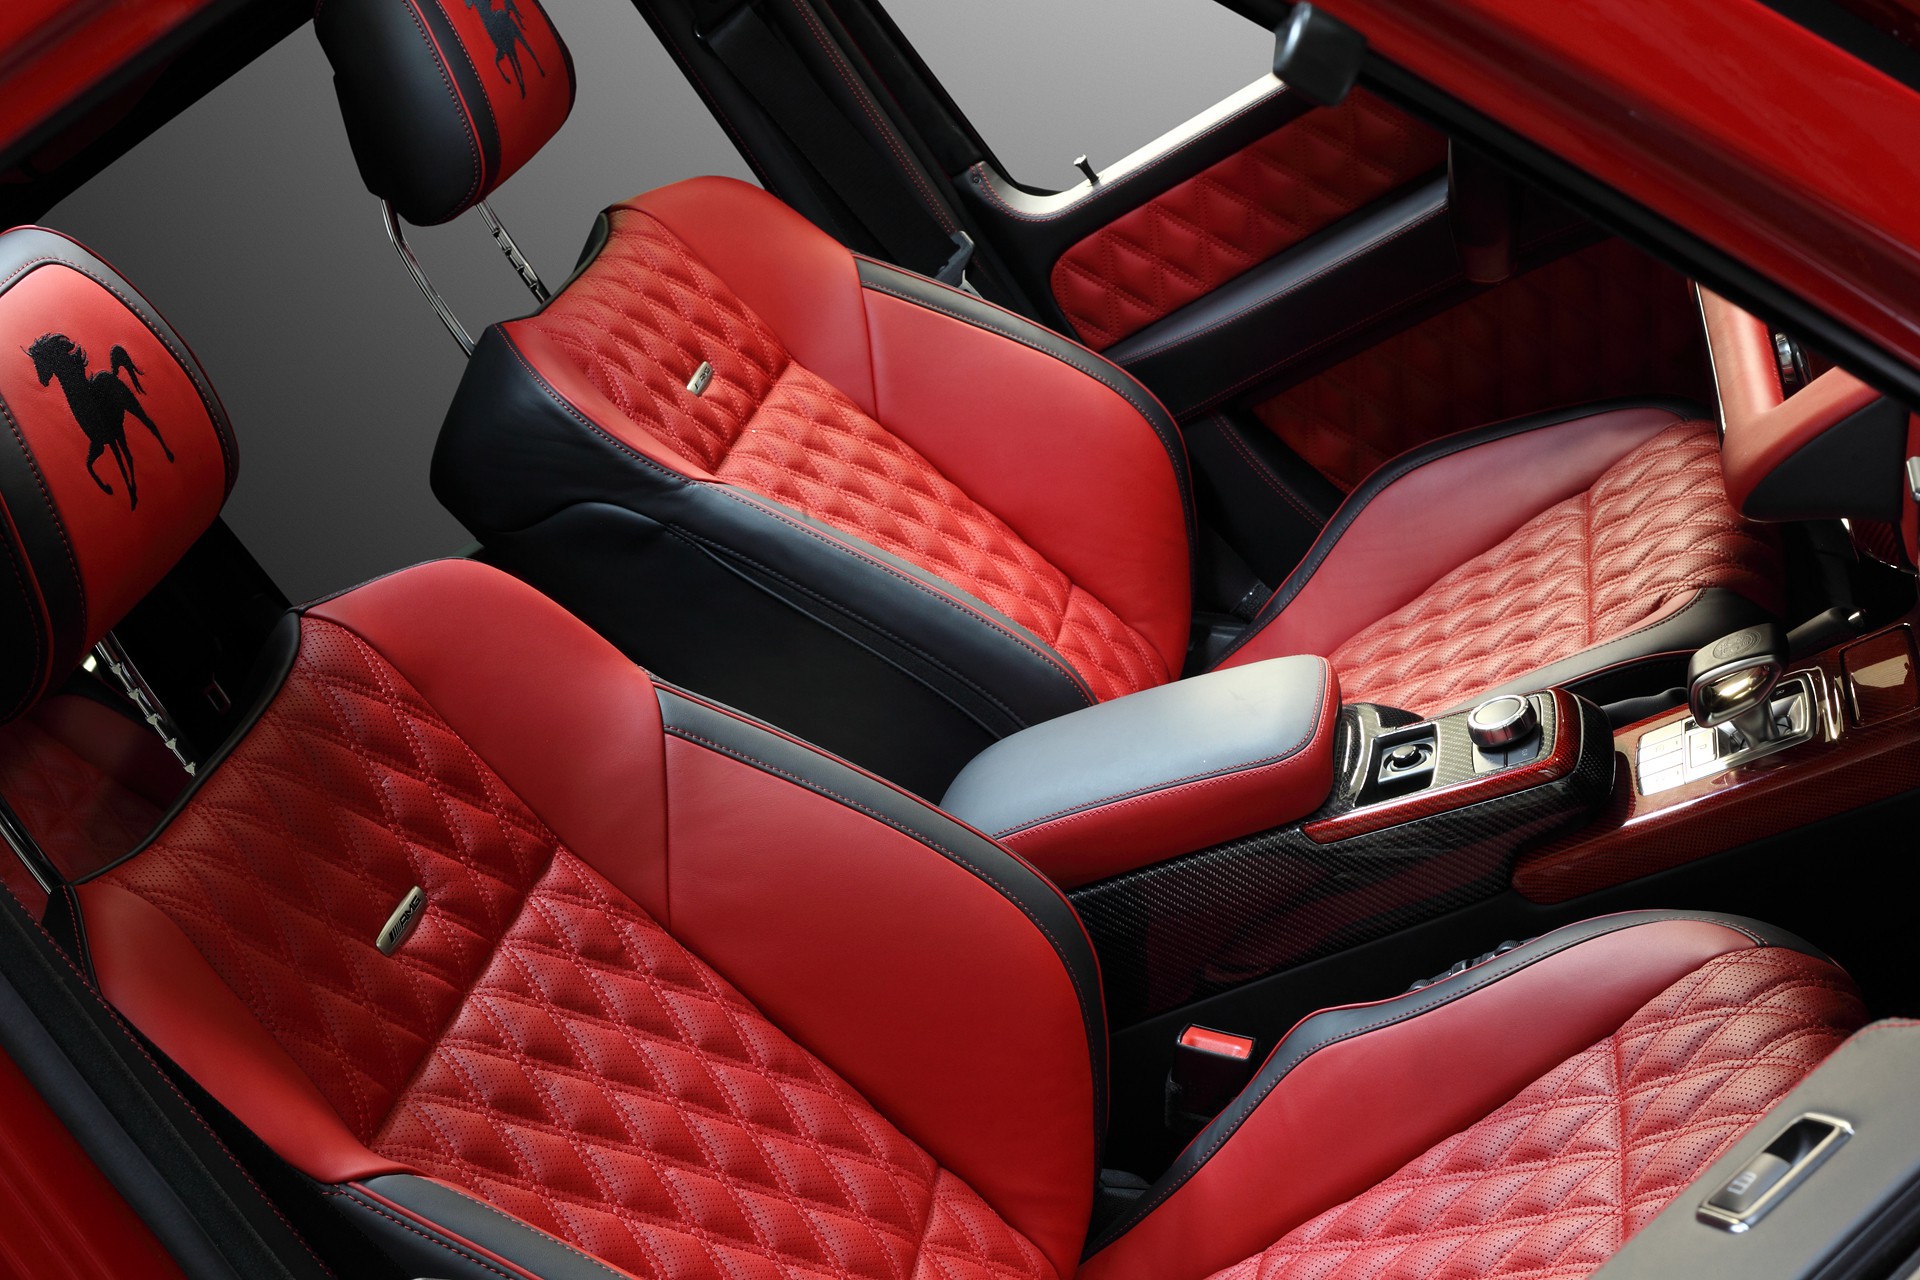 Mercedes Benz G63 Red Interior Topcar